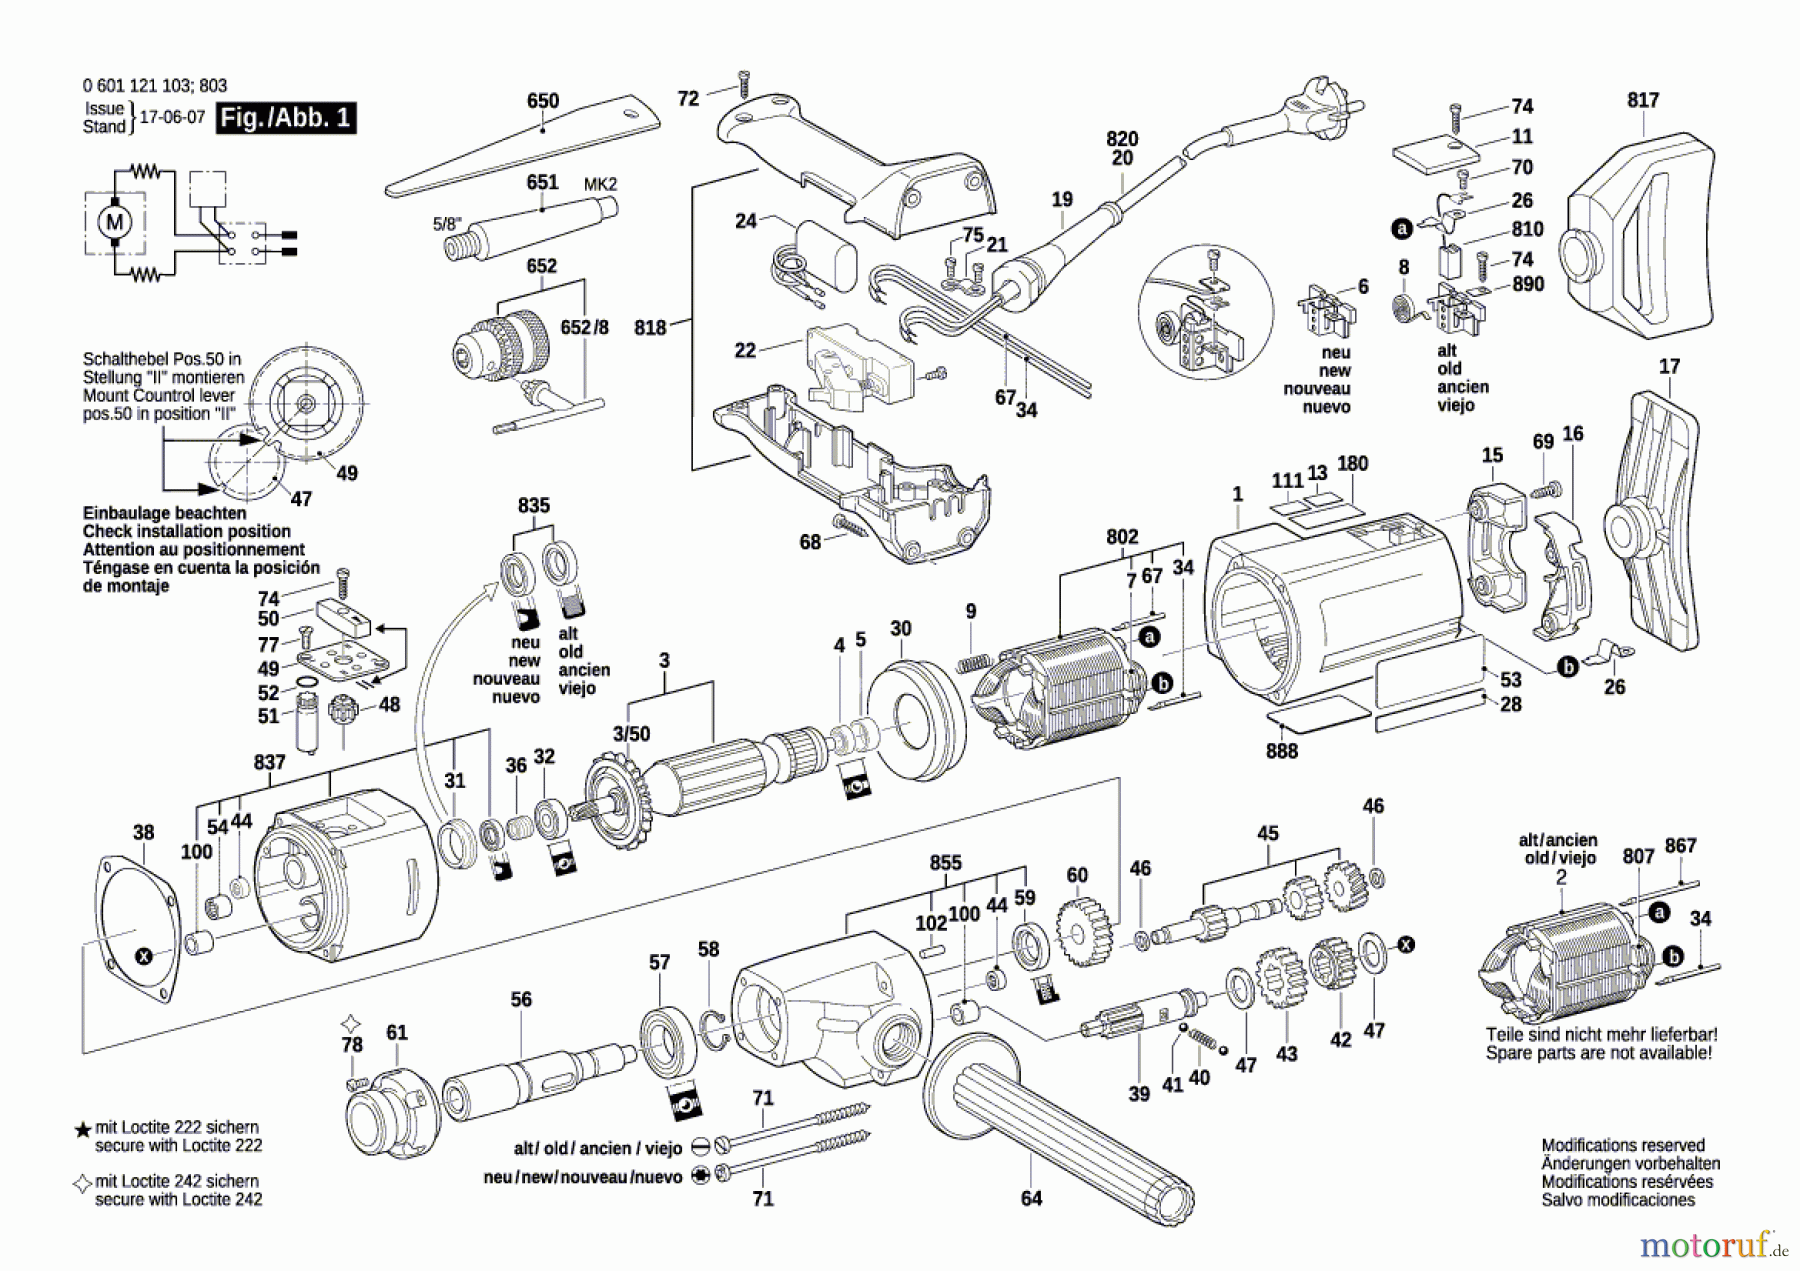  Bosch Werkzeug Bohrmaschine D 23/13 Seite 1